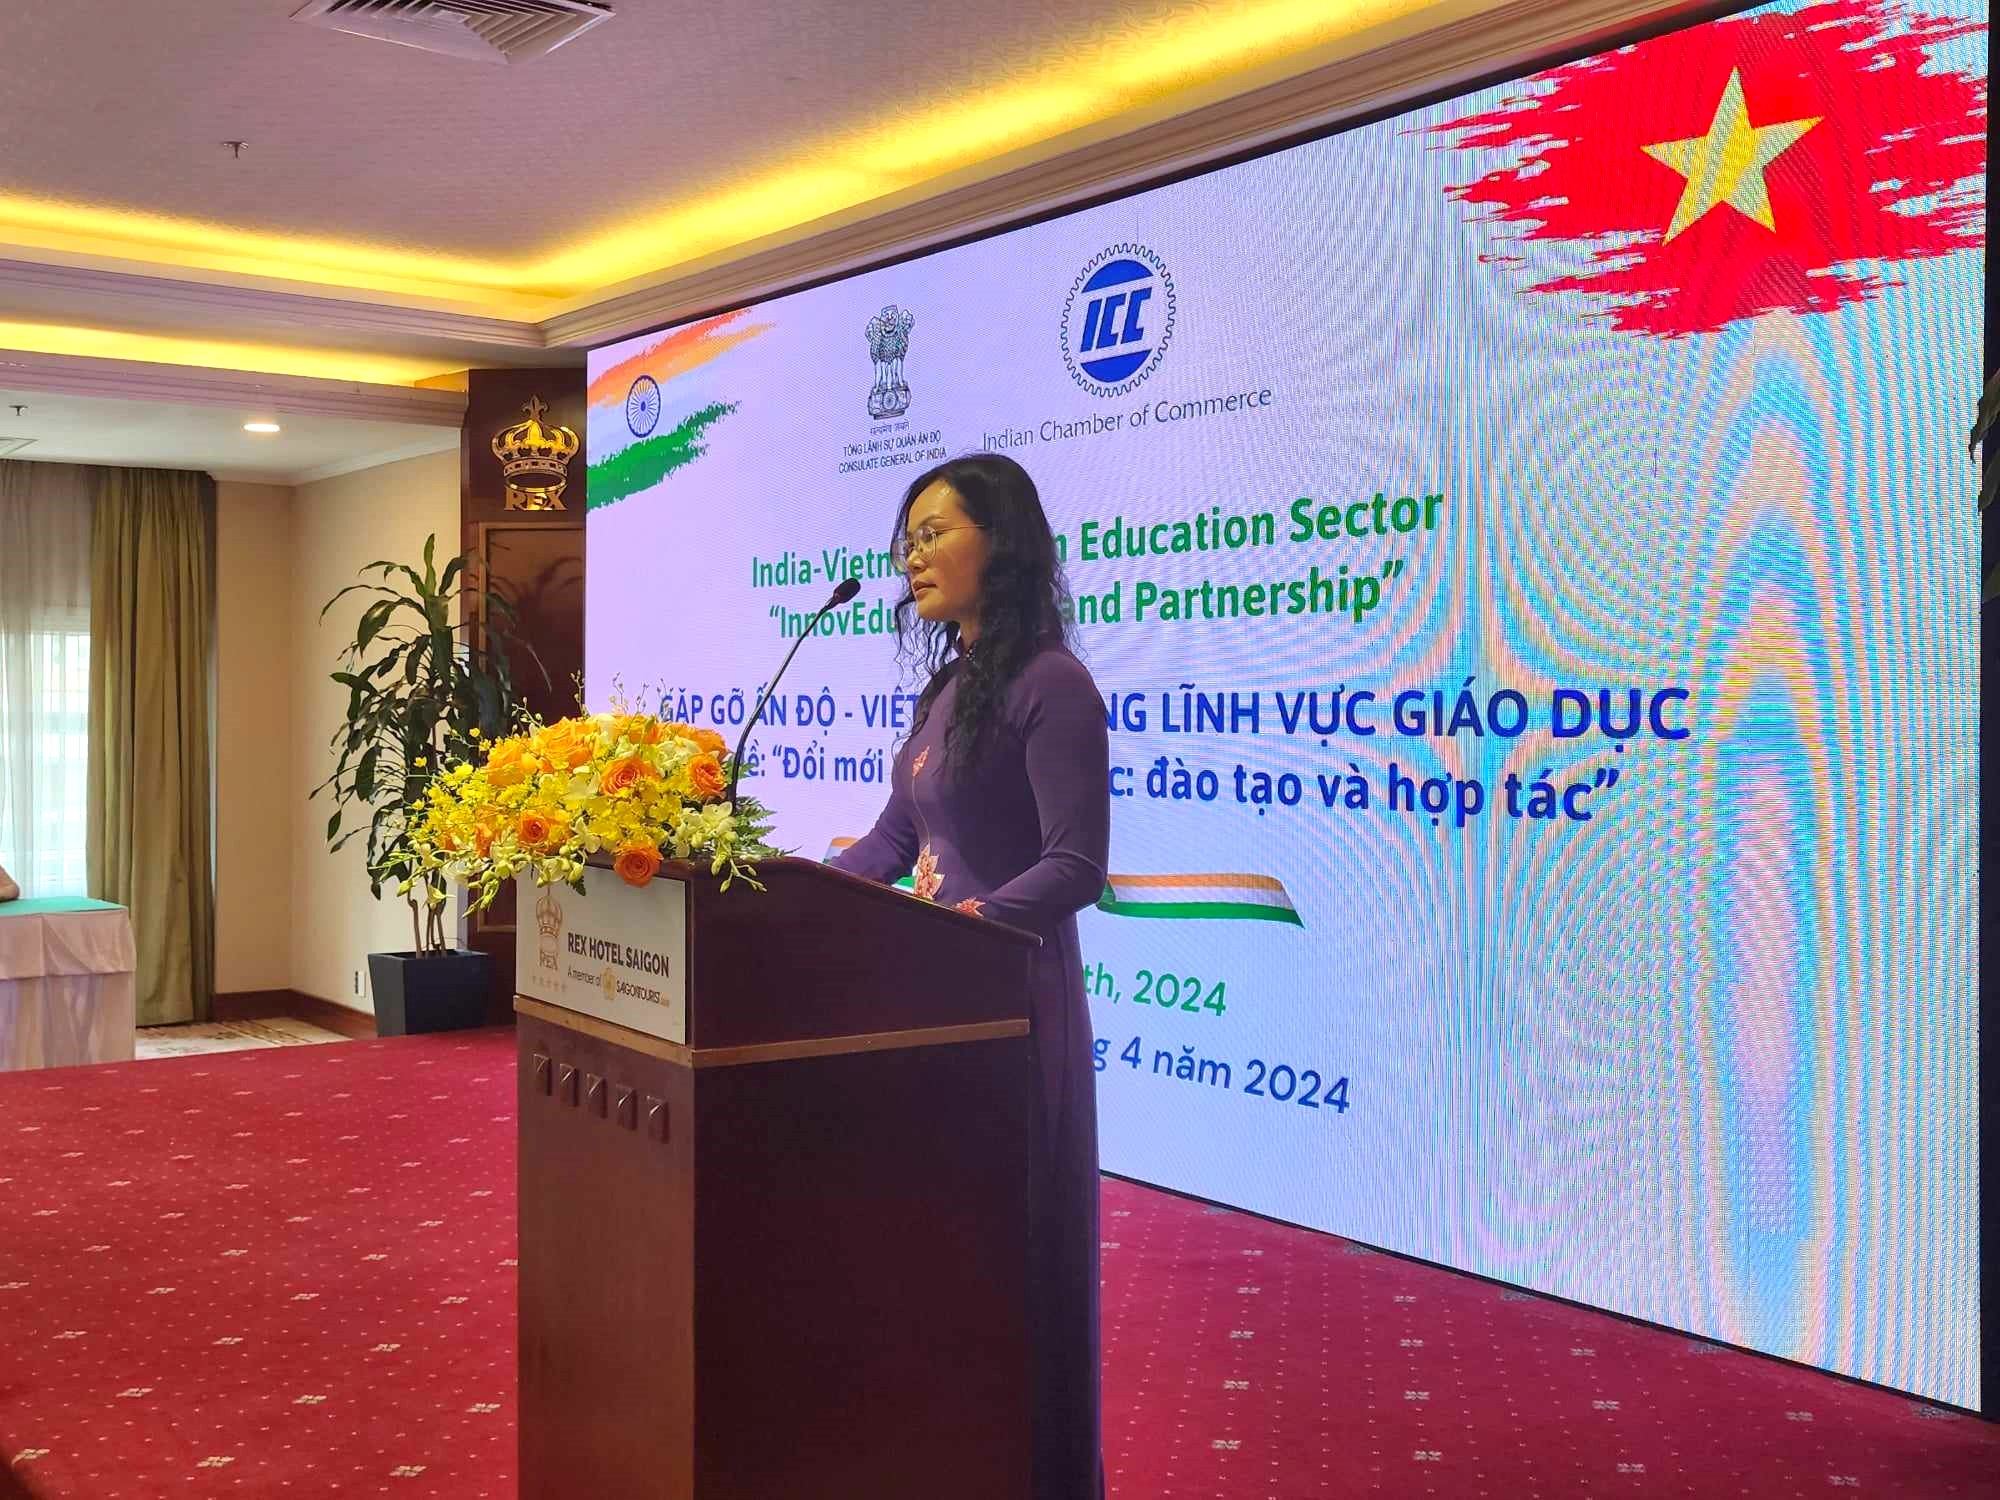 Bà Lê Thụy Mỵ Châu - phó giám đốc Sở Giáo dục và Đào tạo TPHCM - trình bày những thế mạnh của TPHCM trong việc đào tạo nguồn nhân lực chất lượng cao